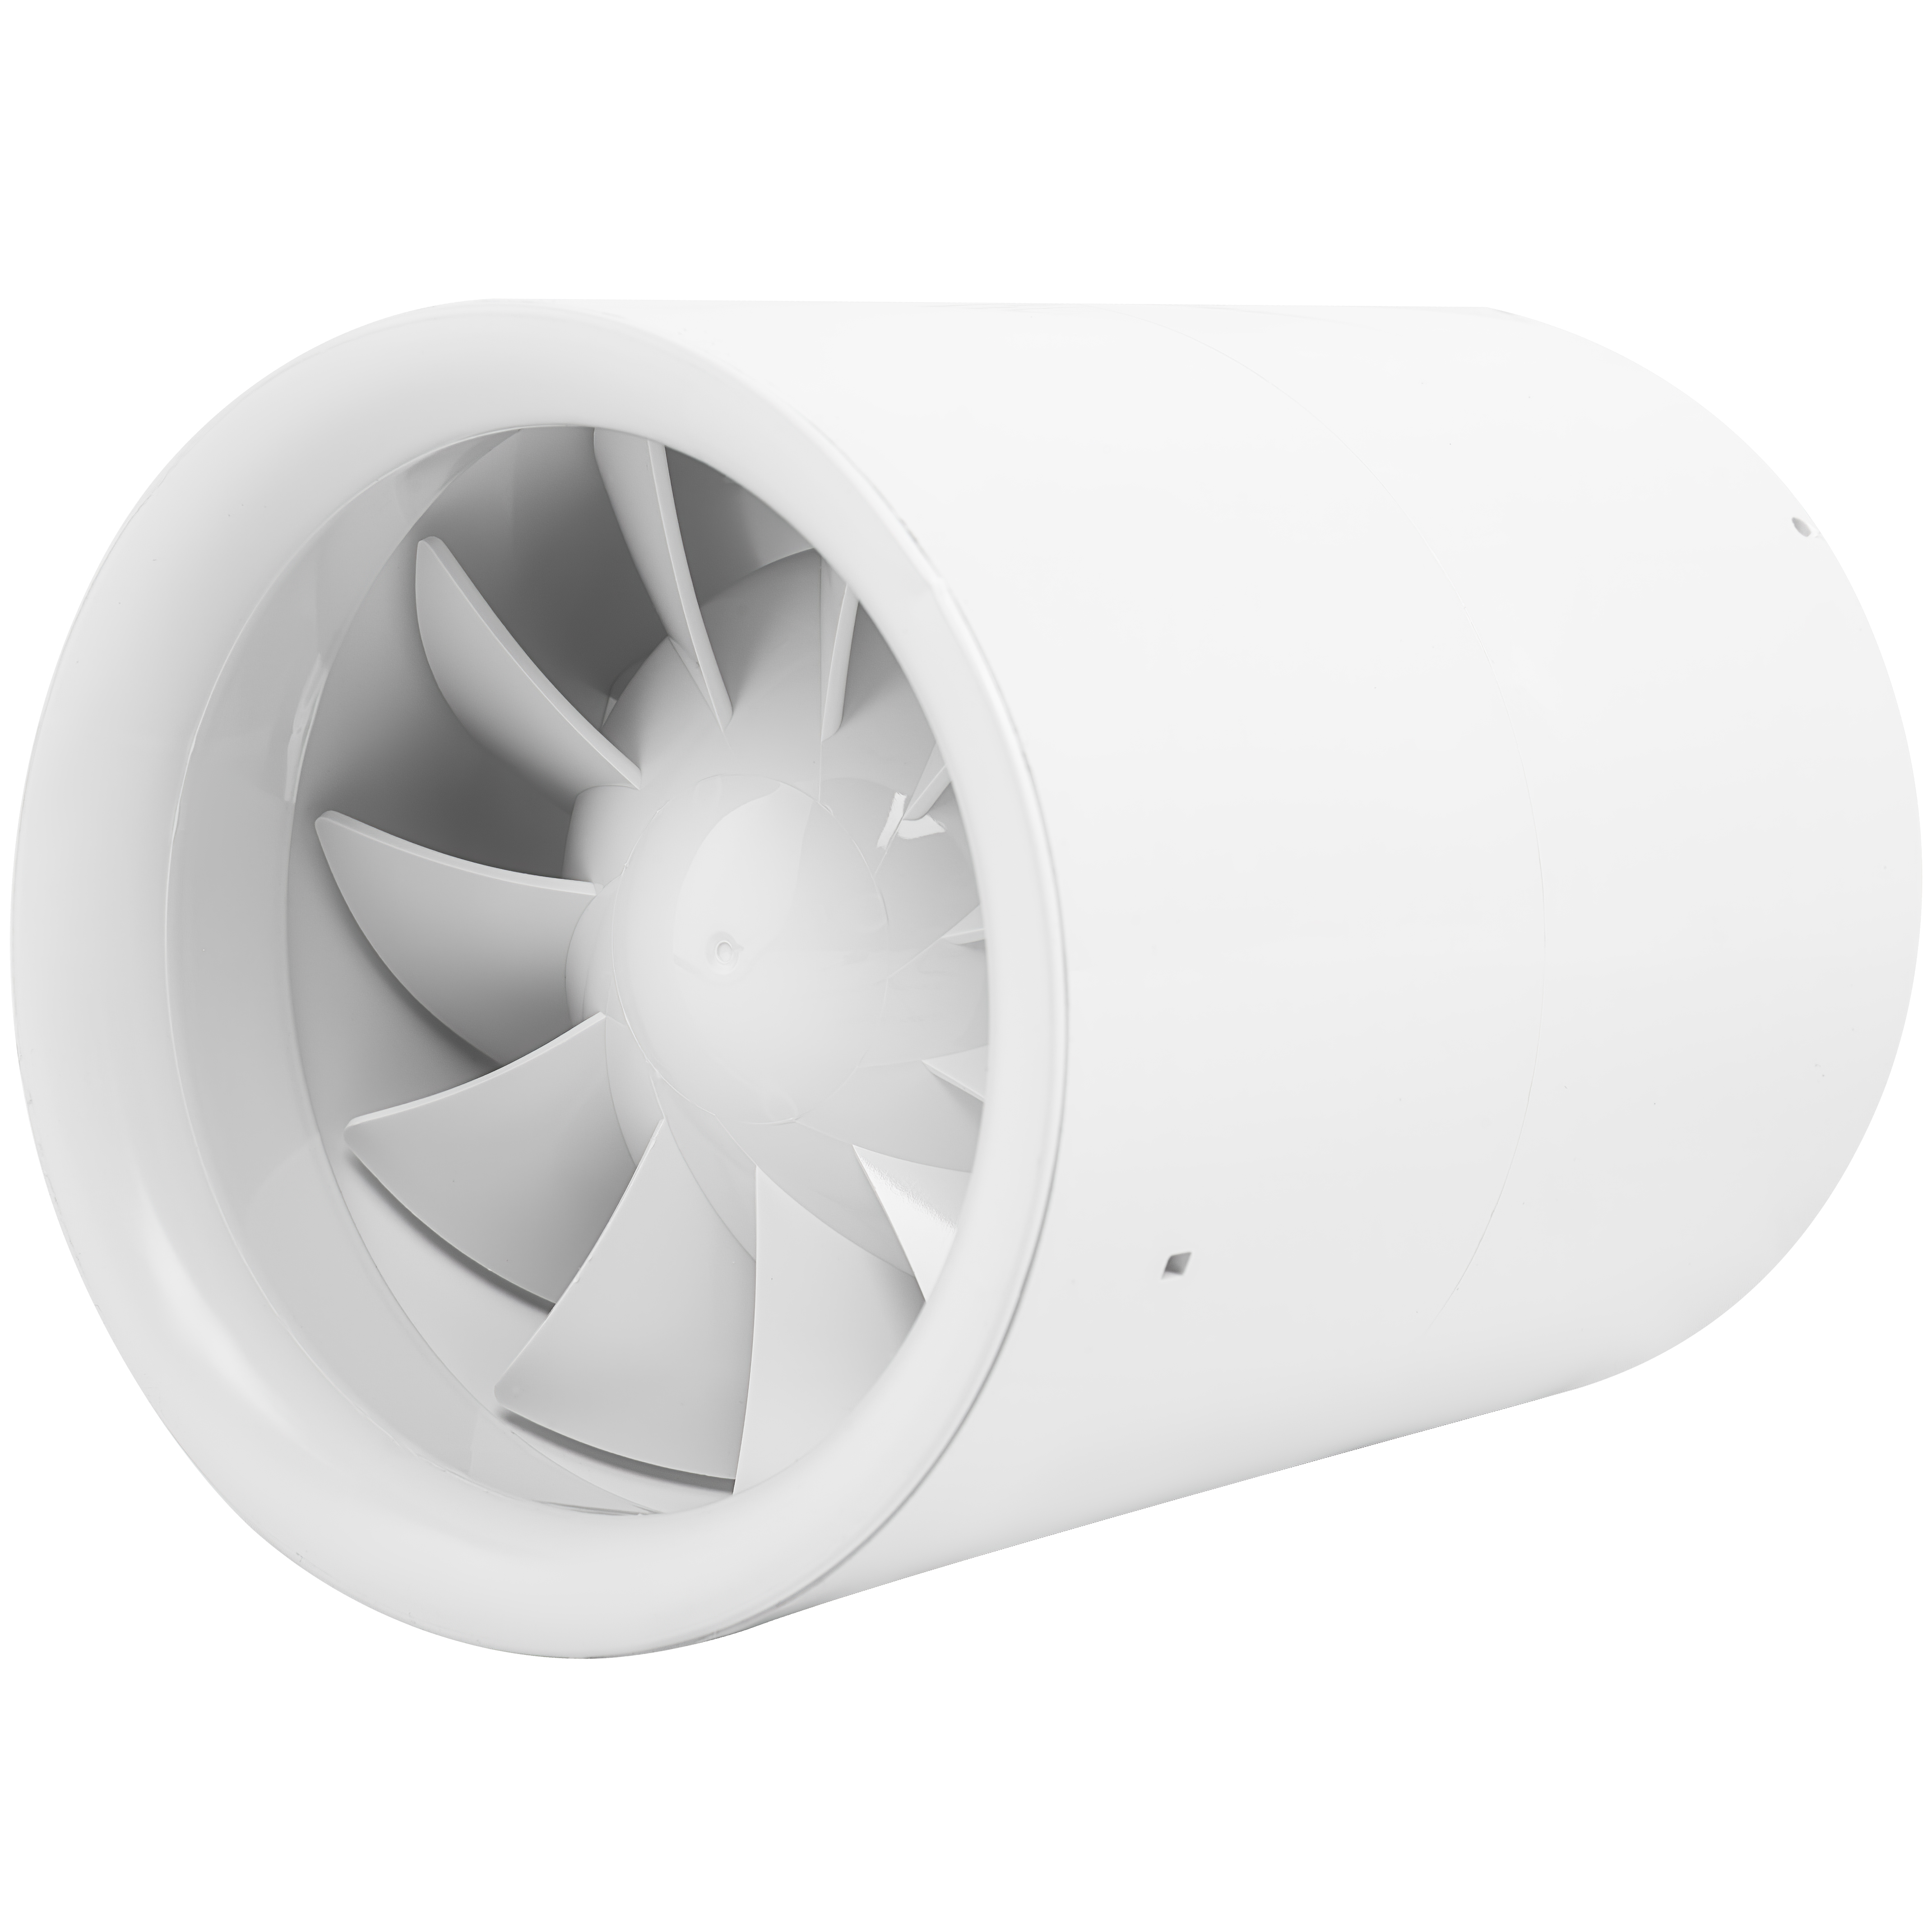 Характеристики осевой канальный вентилятор 125 мм Вентс Квайтлайн 125